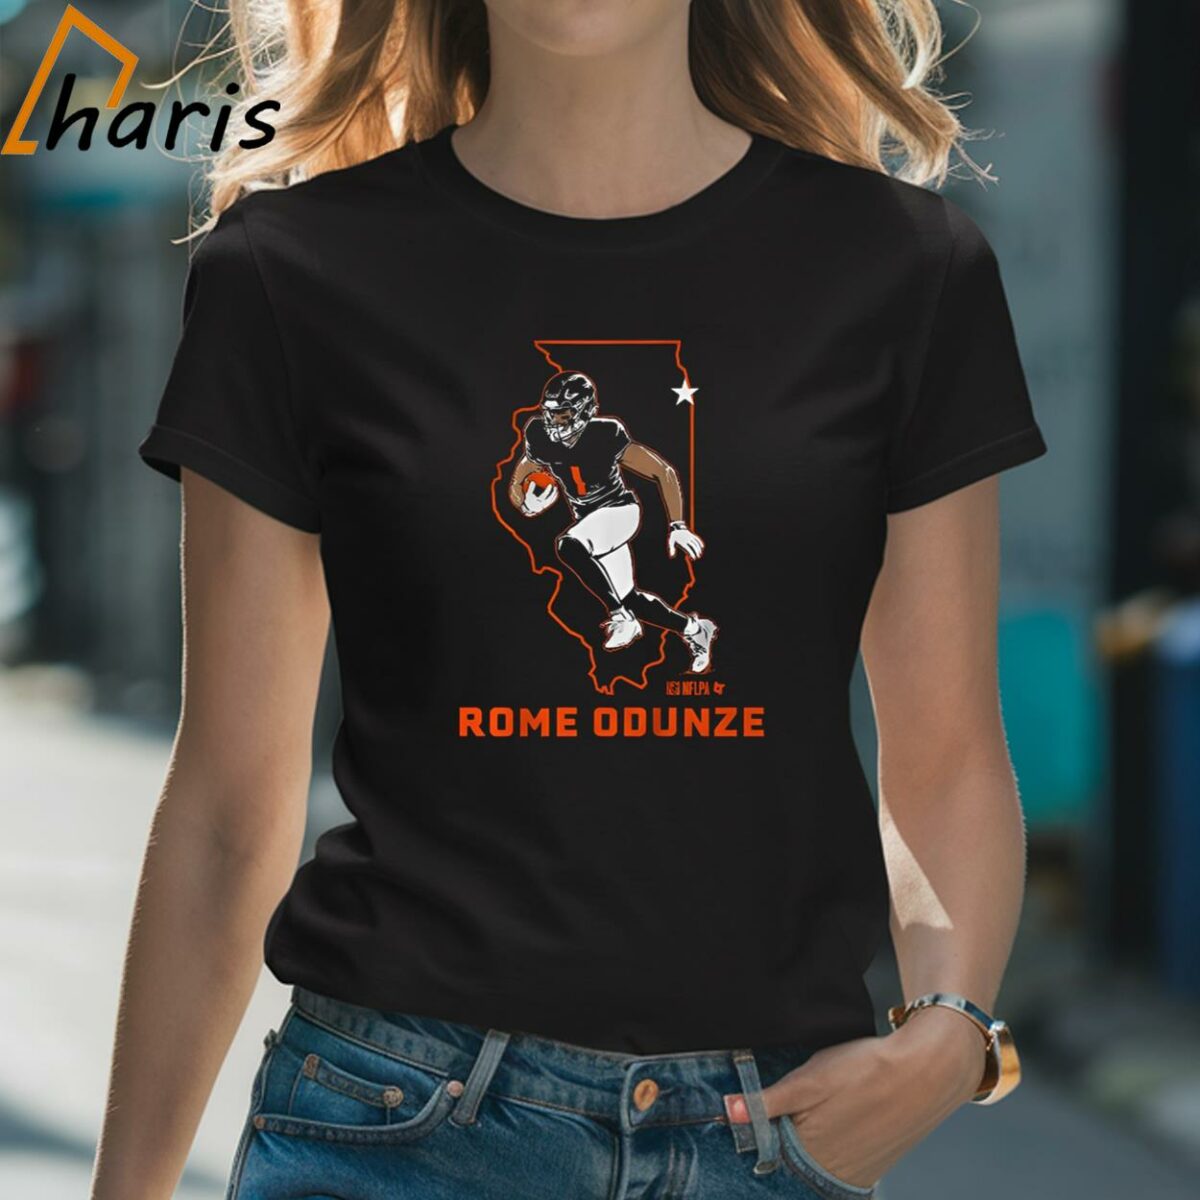 Rome Odunze State Star T shirt 2 Shirt